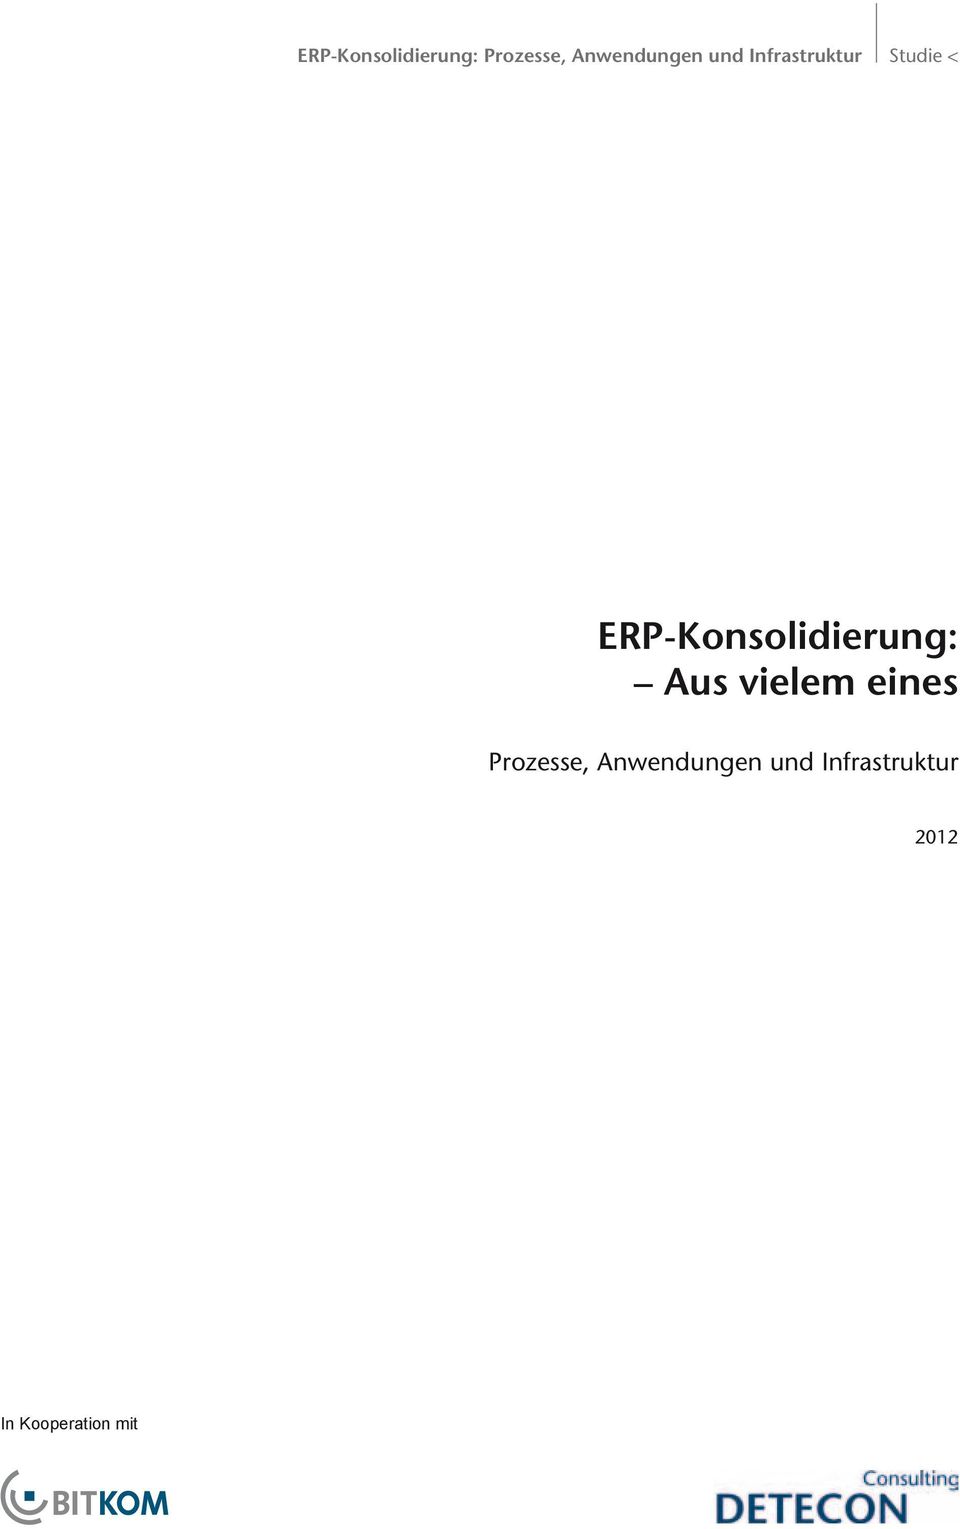 ERP-Konsolidierung: Aus vielem eines